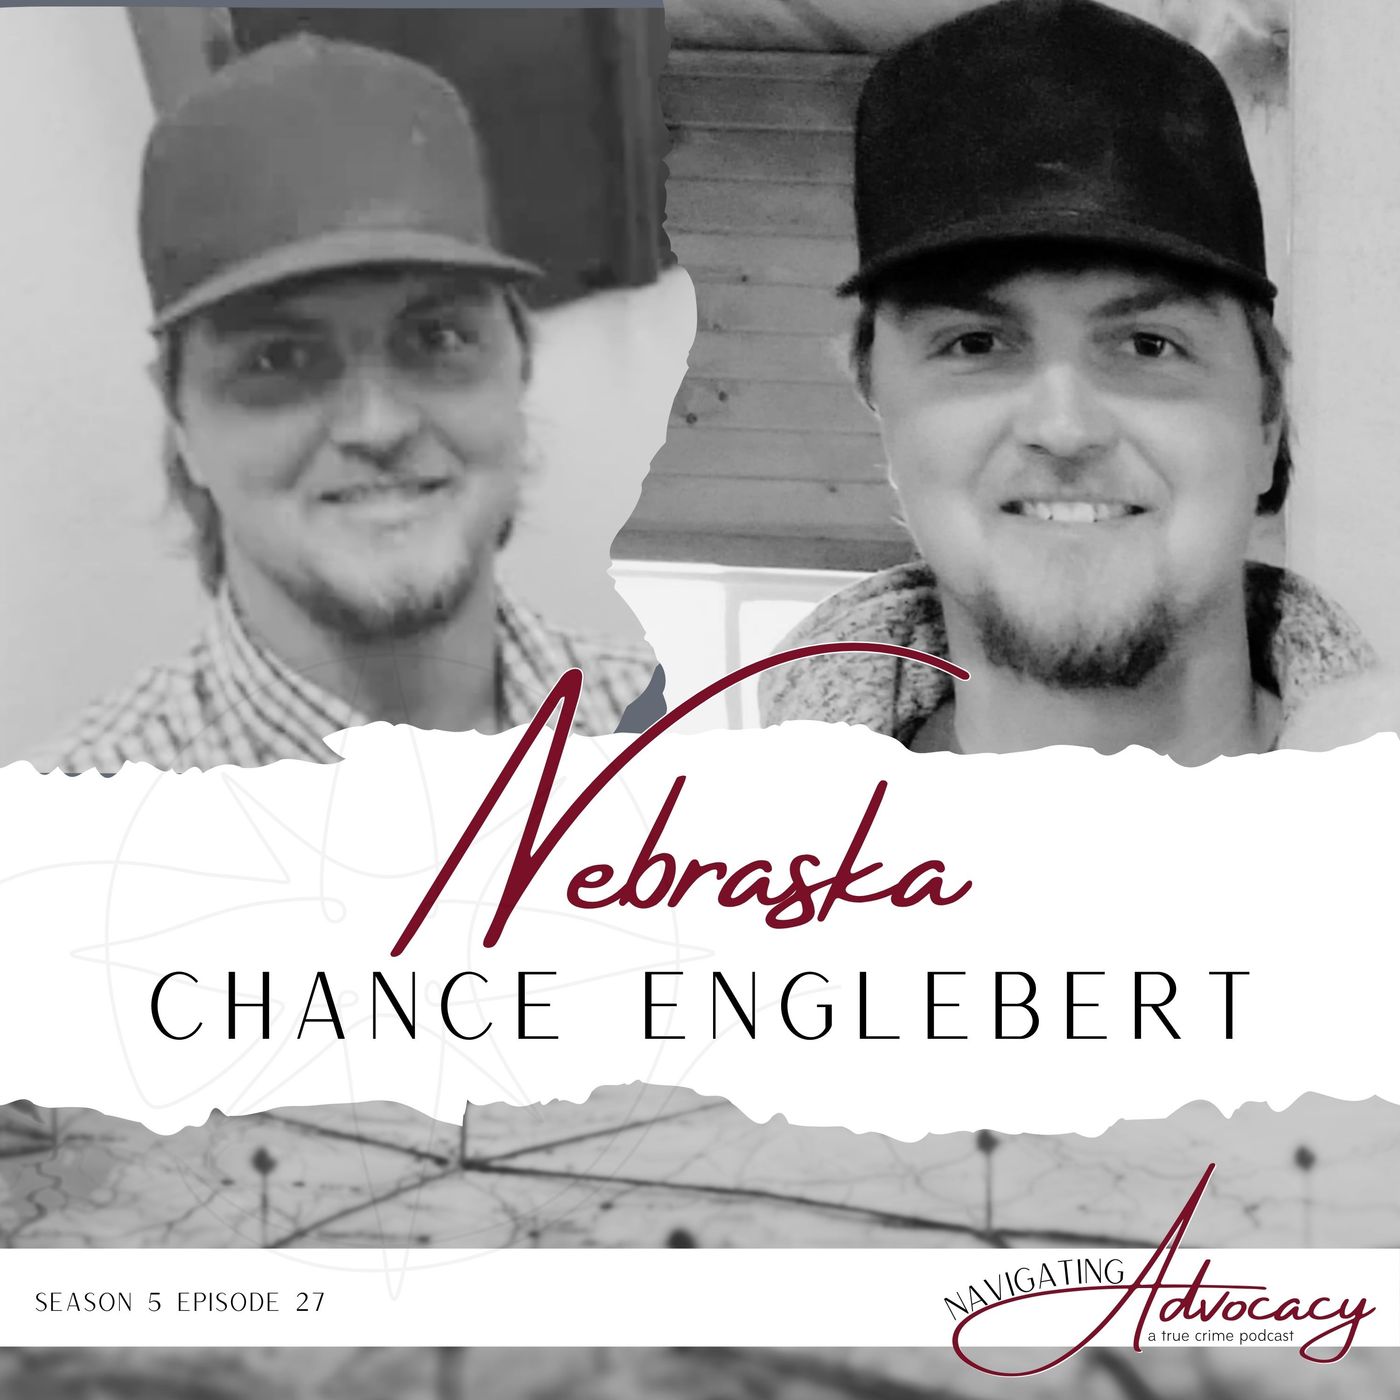 Nebraska : Chance Englebert